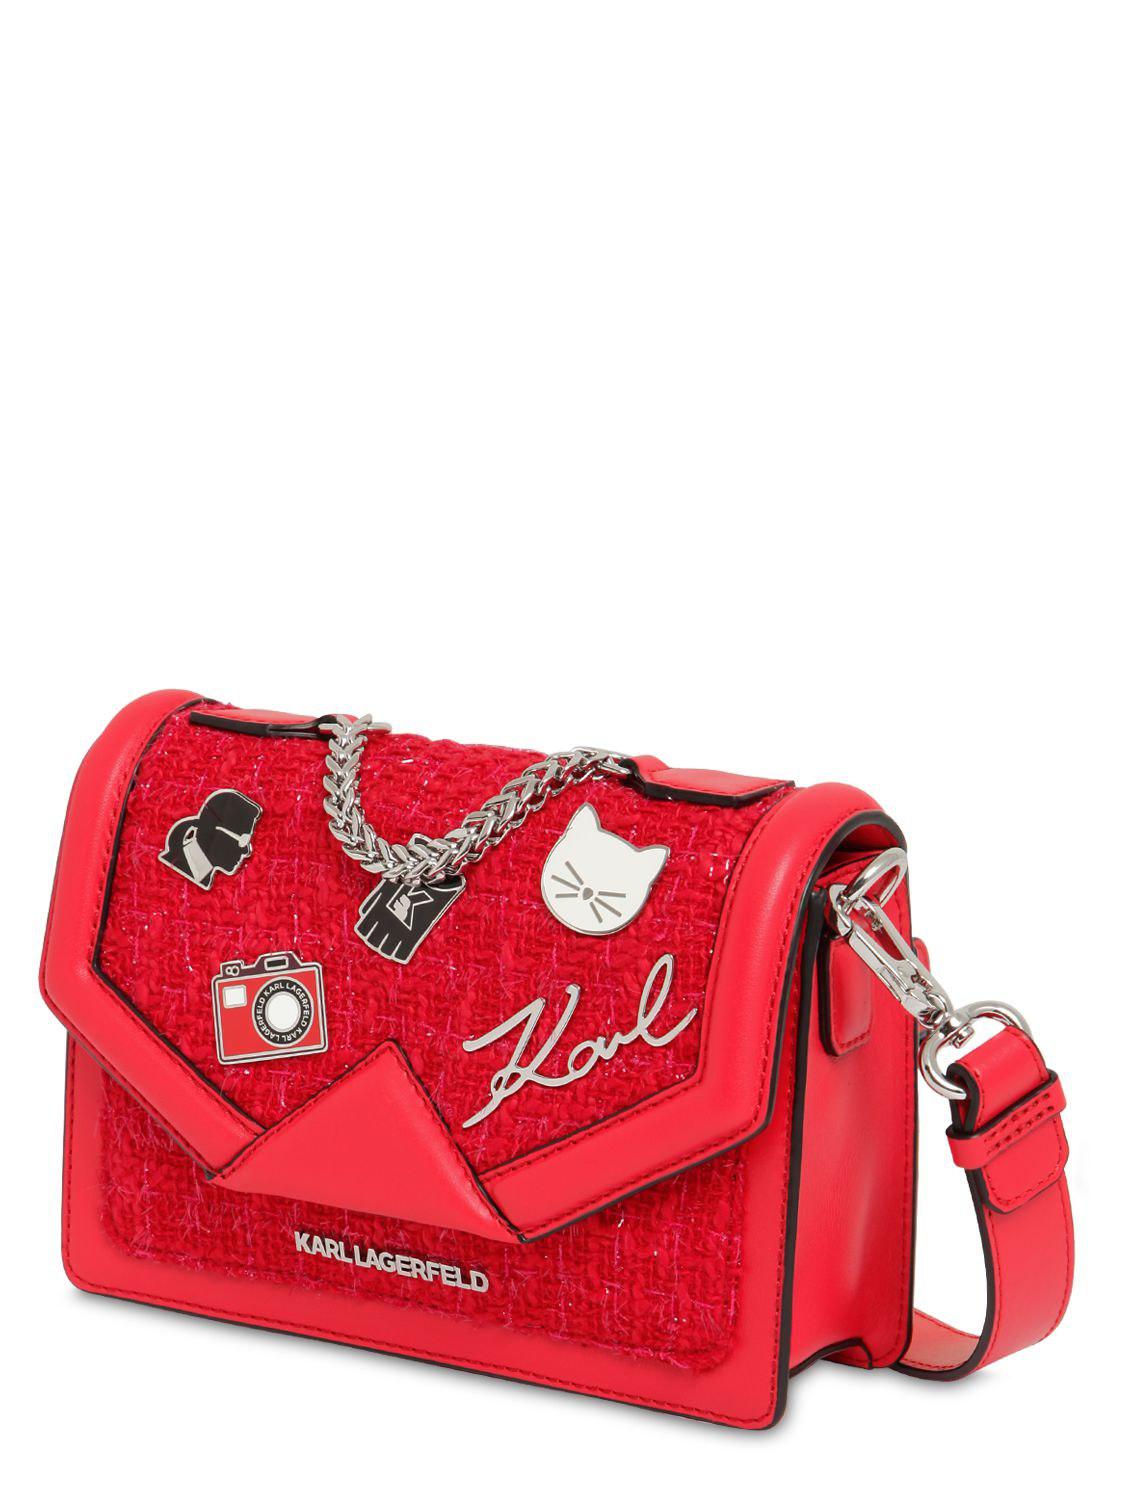 Karl Lagerfeld Mini K/klassik Pins Leather & Tweed Bag in Red - Lyst